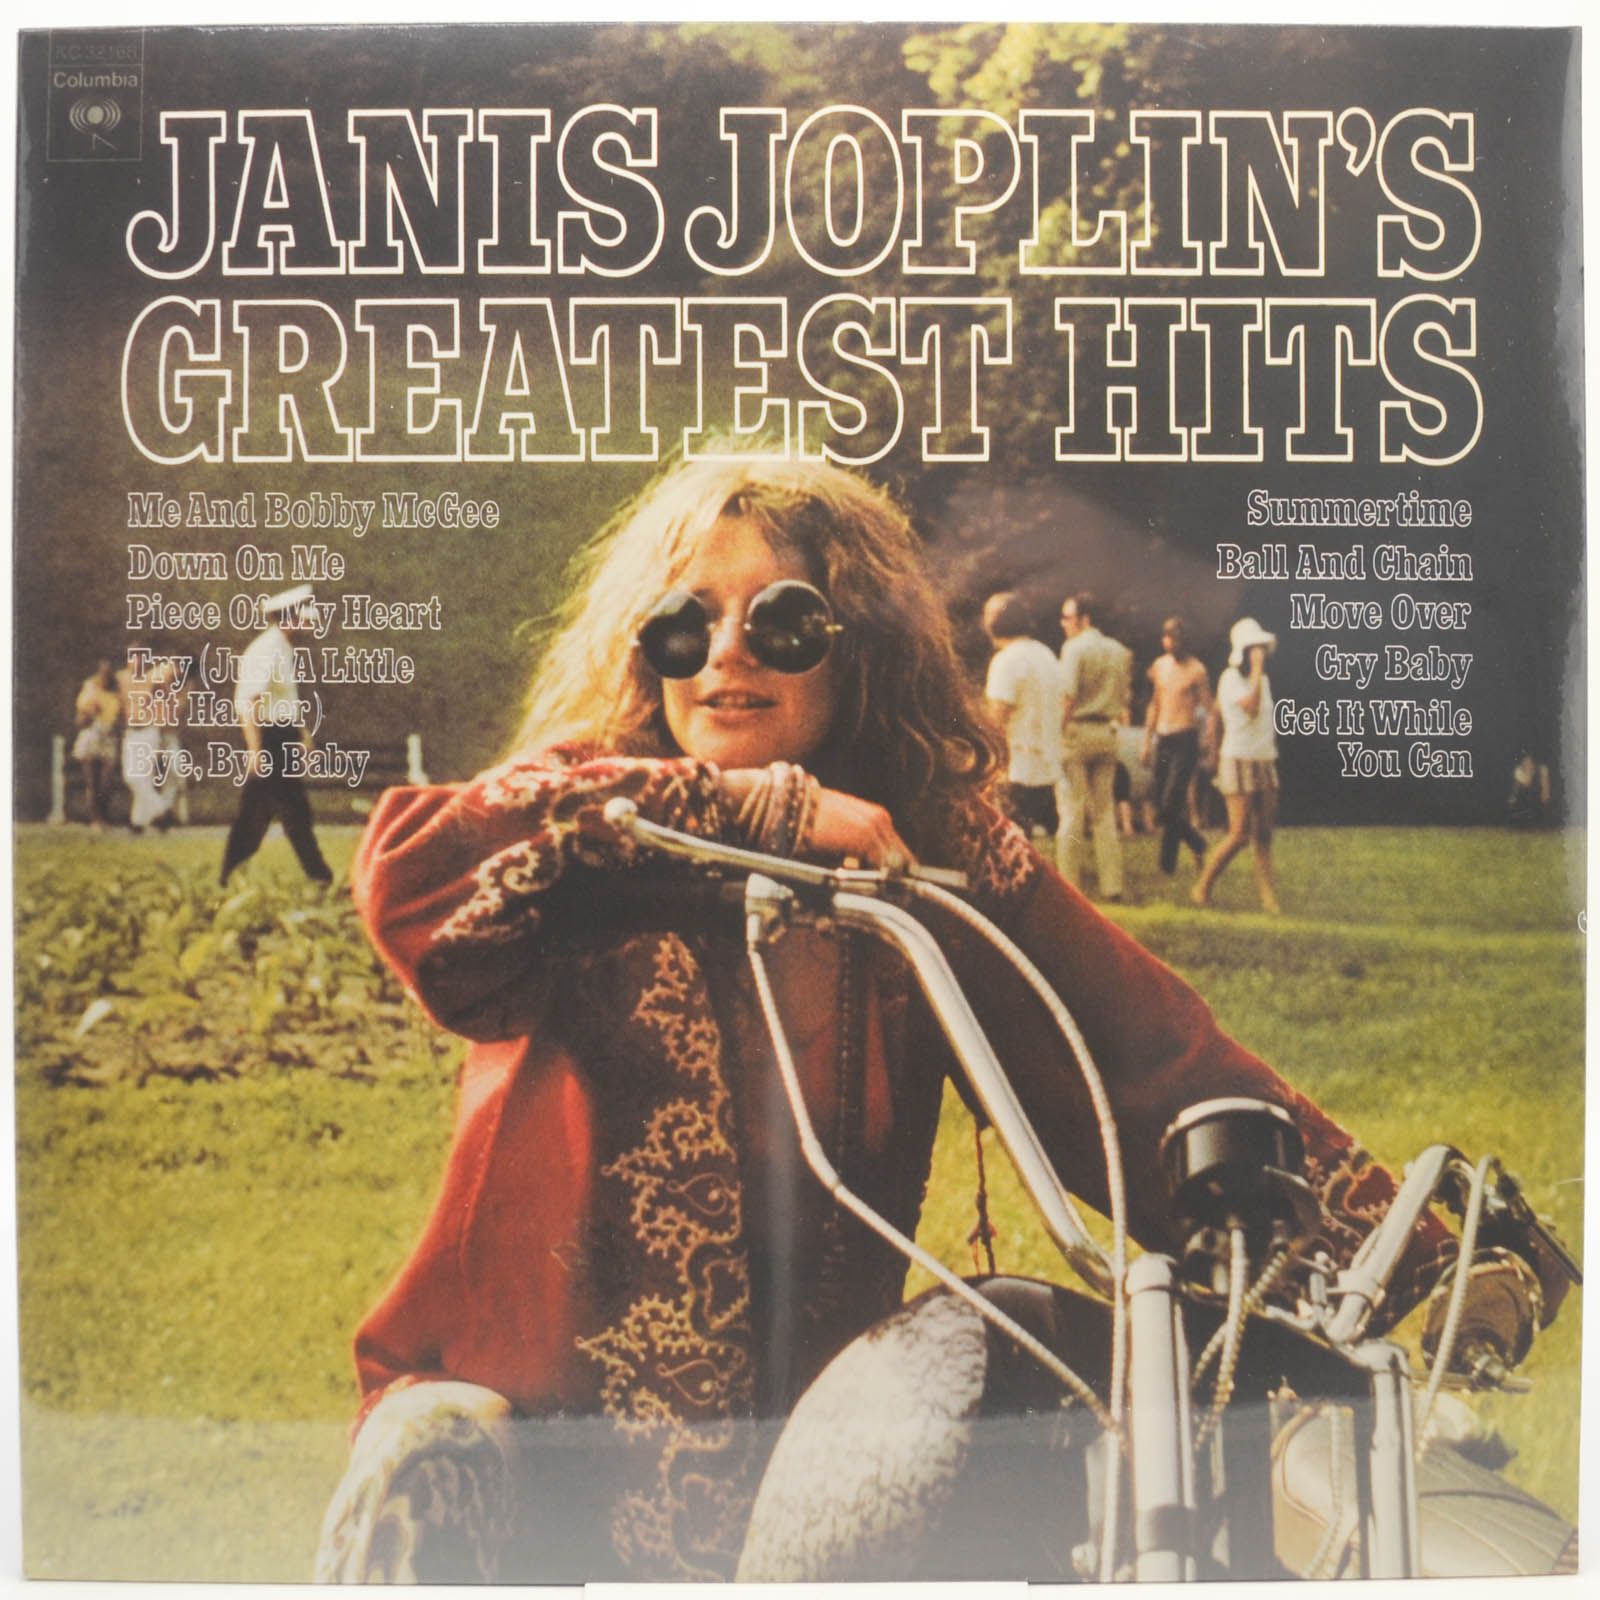 Janis Joplin — Janis Joplin's Greatest Hits, 1973